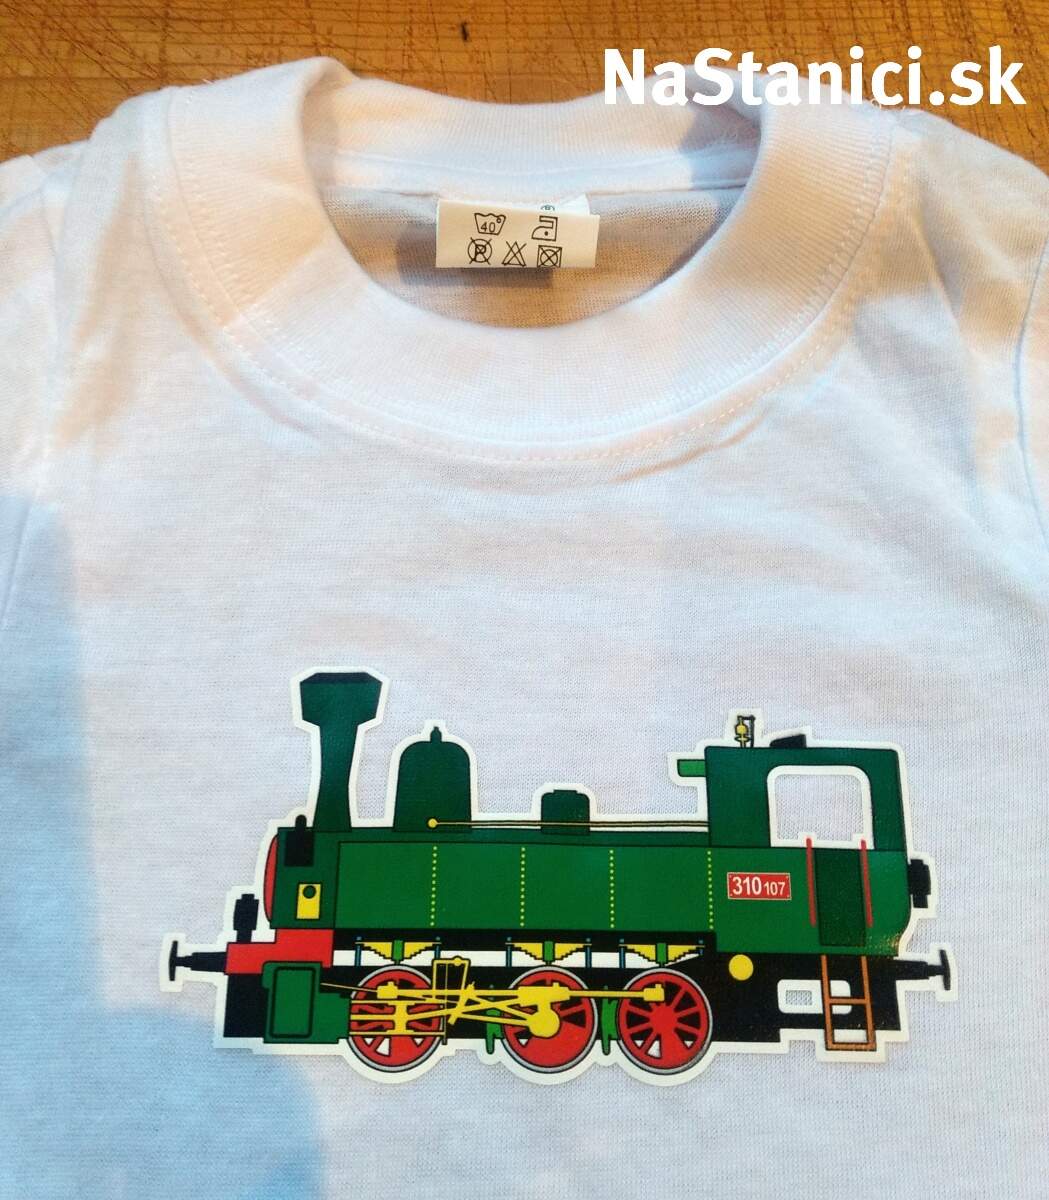 Detské tričko s mašinkou 310